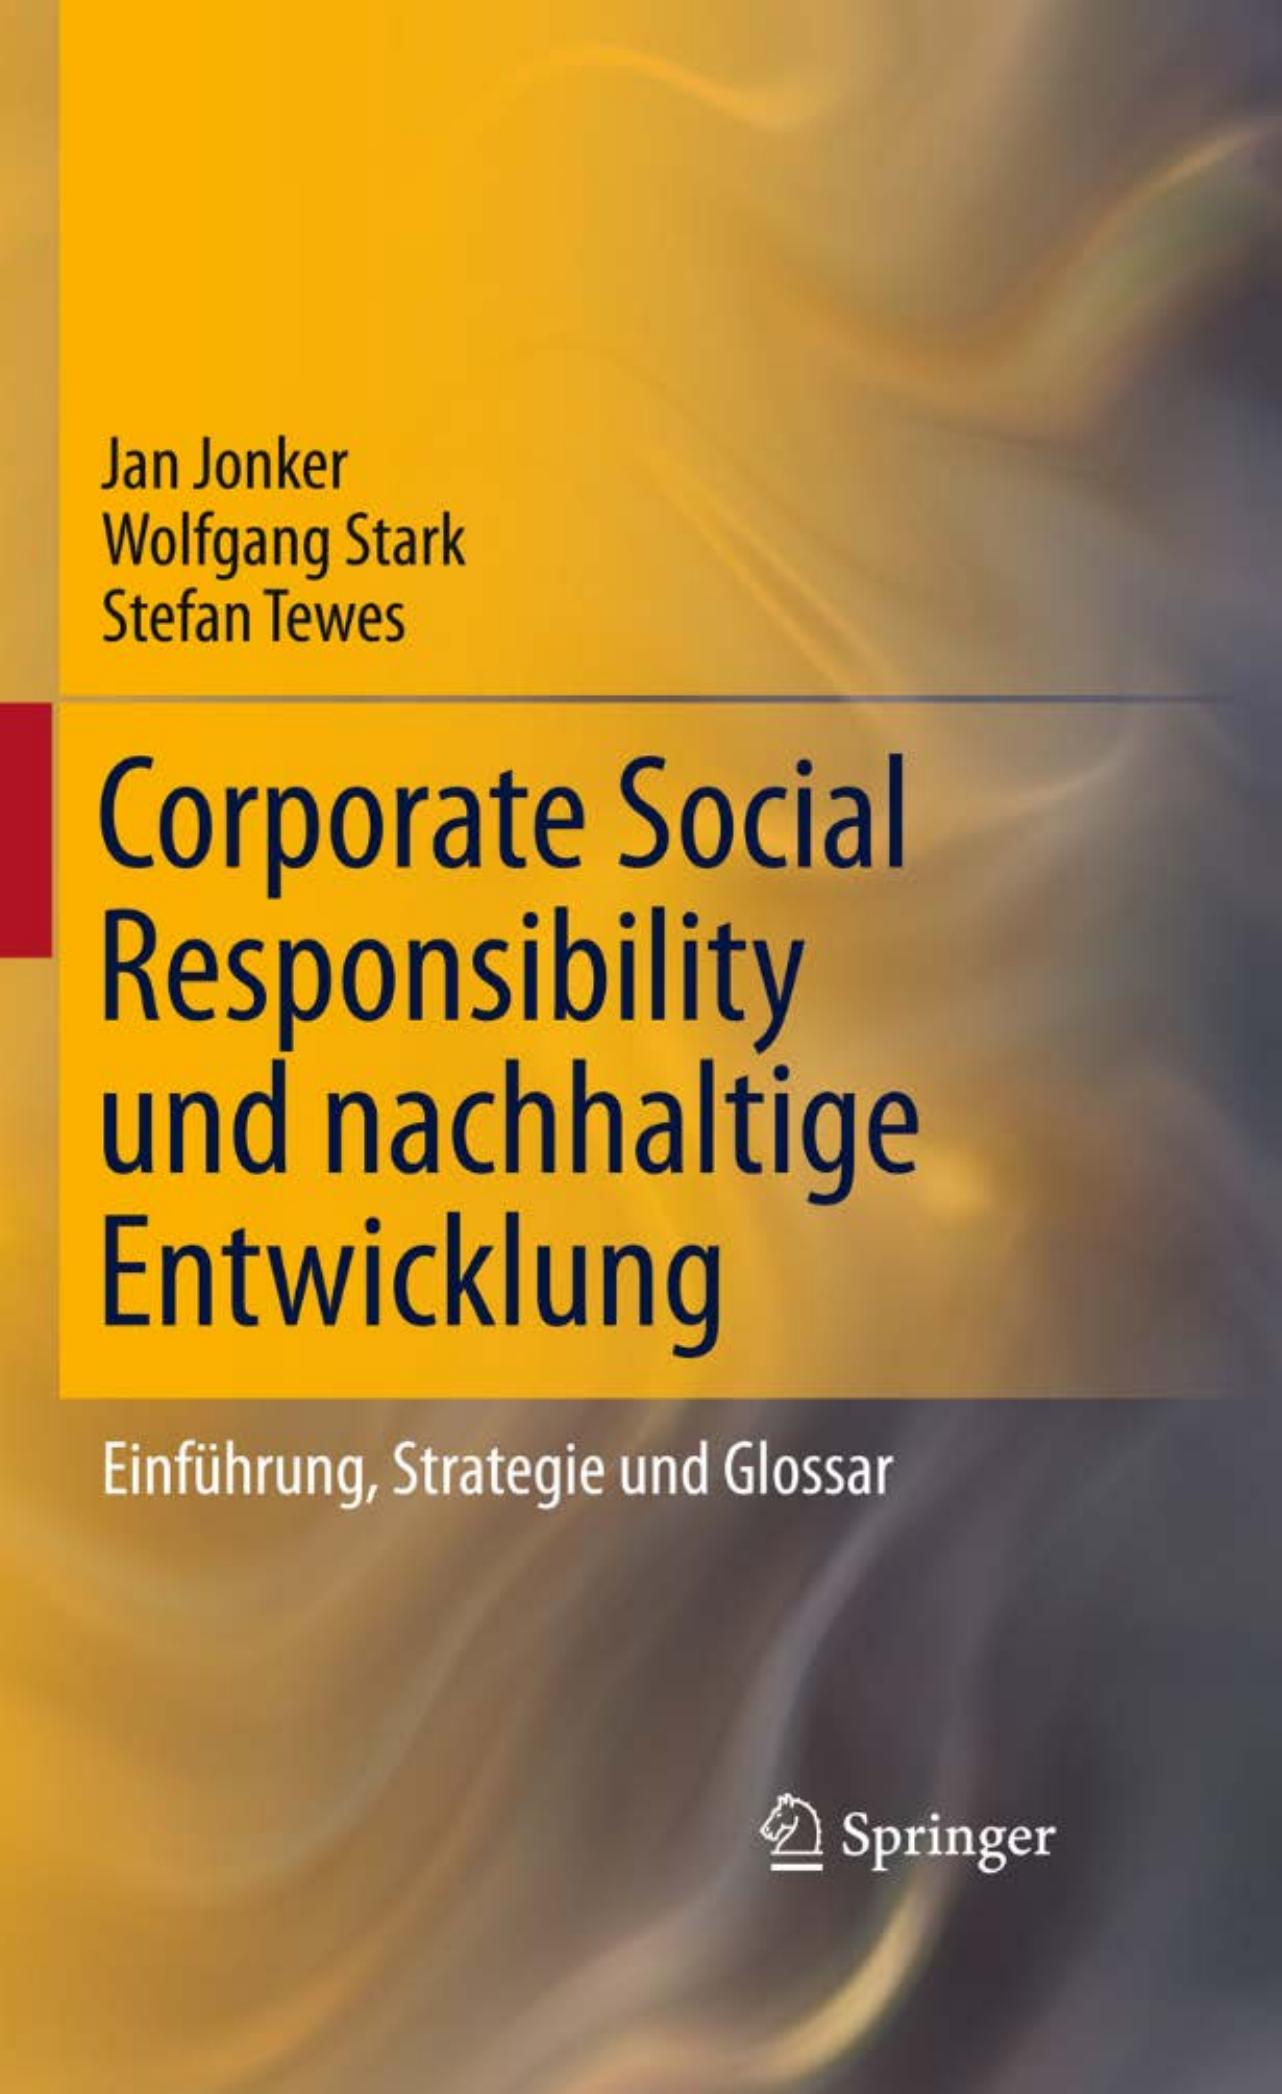 Corporate Social Responsibility und nachhaltige Entwicklung: Einführung, Strategie und Glossar